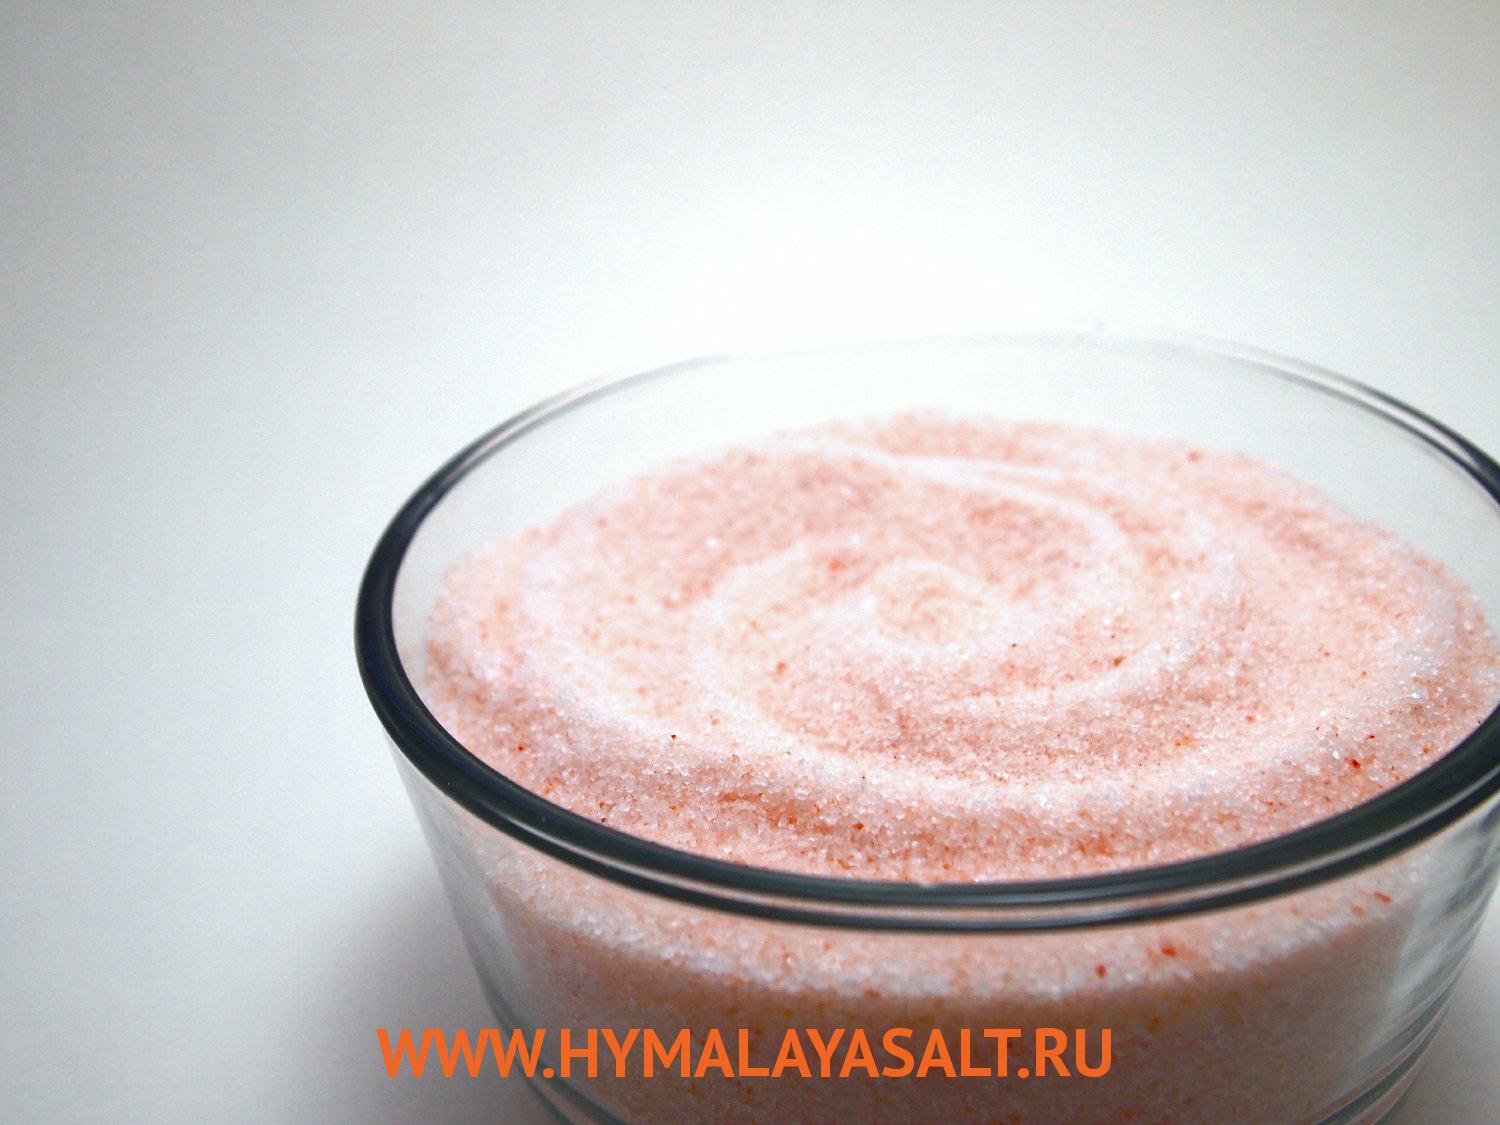 Гималайская соль: Средняя розовая соль, 1 кг, 2 мм, мешок без маркировки